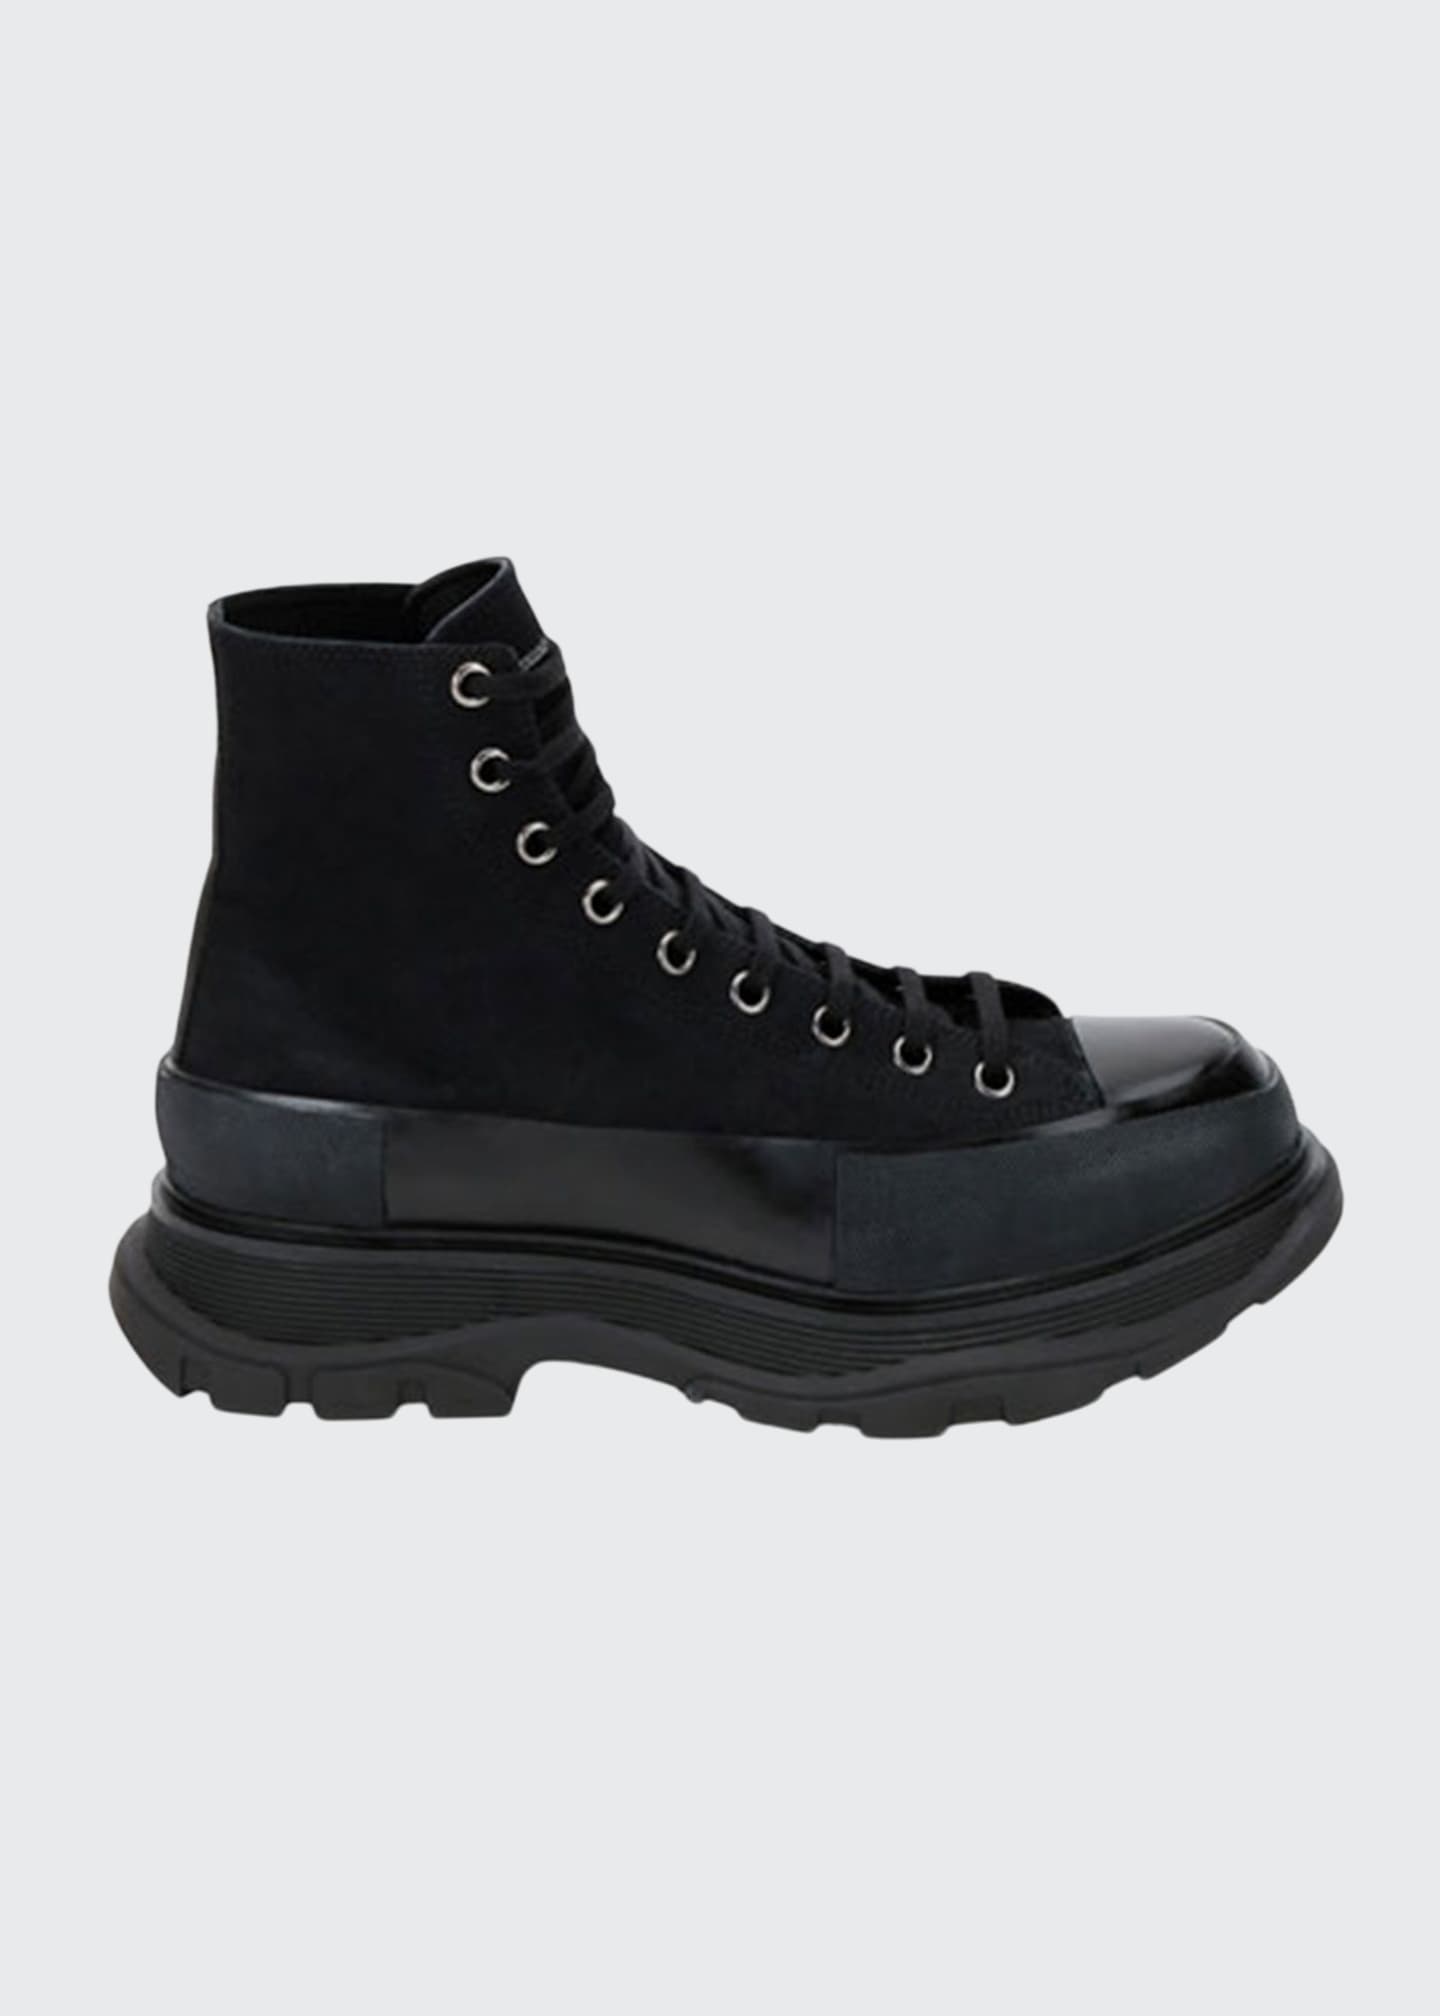 Alexander McQueen Men's Tread Slick Boots - Bergdorf Goodman